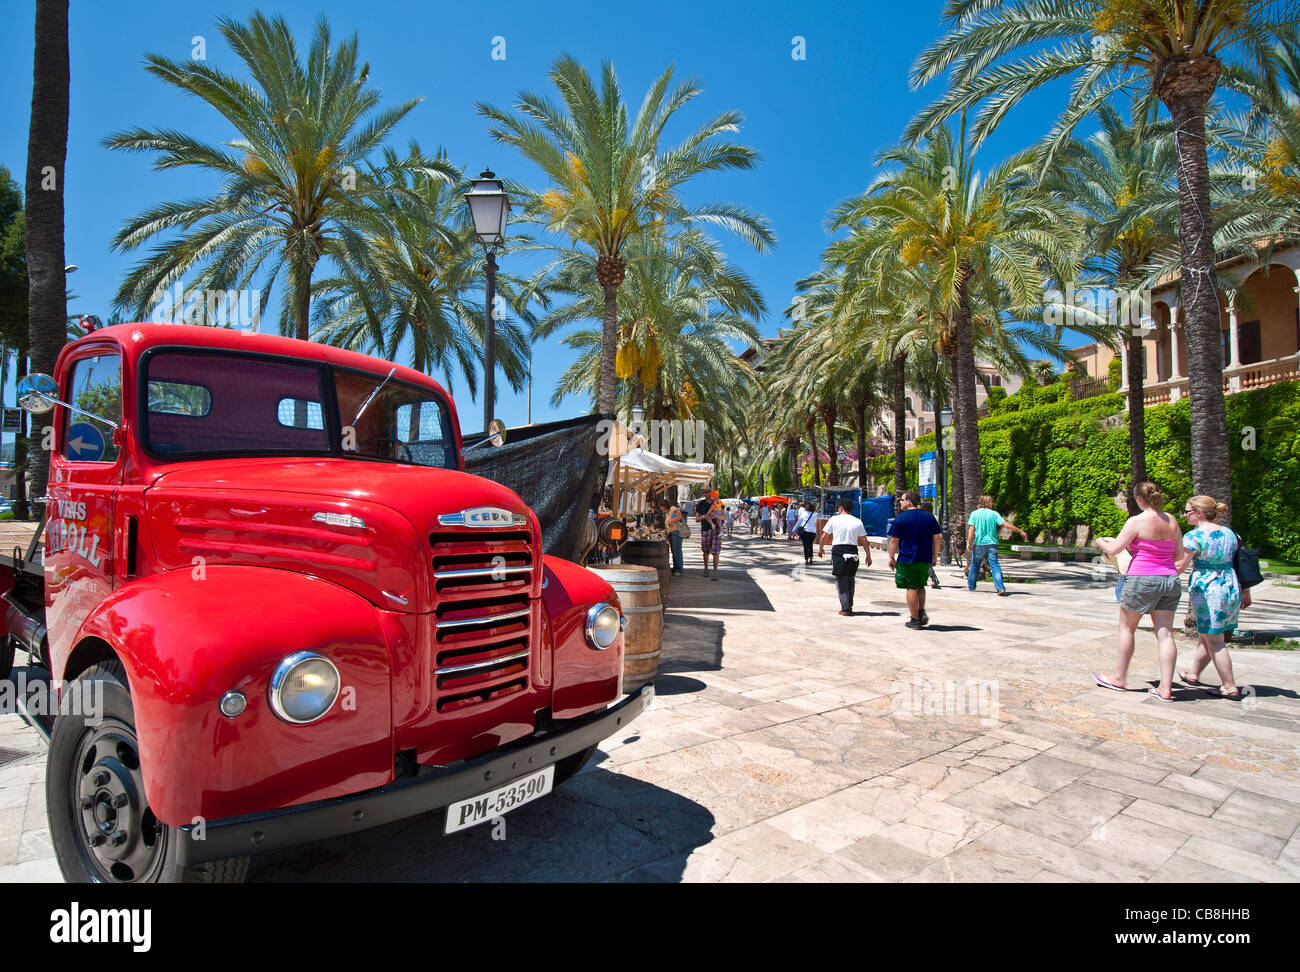 Palma Market Spanischer vintage roter Lieferwagen mit Werbung für lokalen Wein und Marktstände auf Maritimo mit Besuchern, die in Palma de Mallorca Spanien stöbern Stockfoto